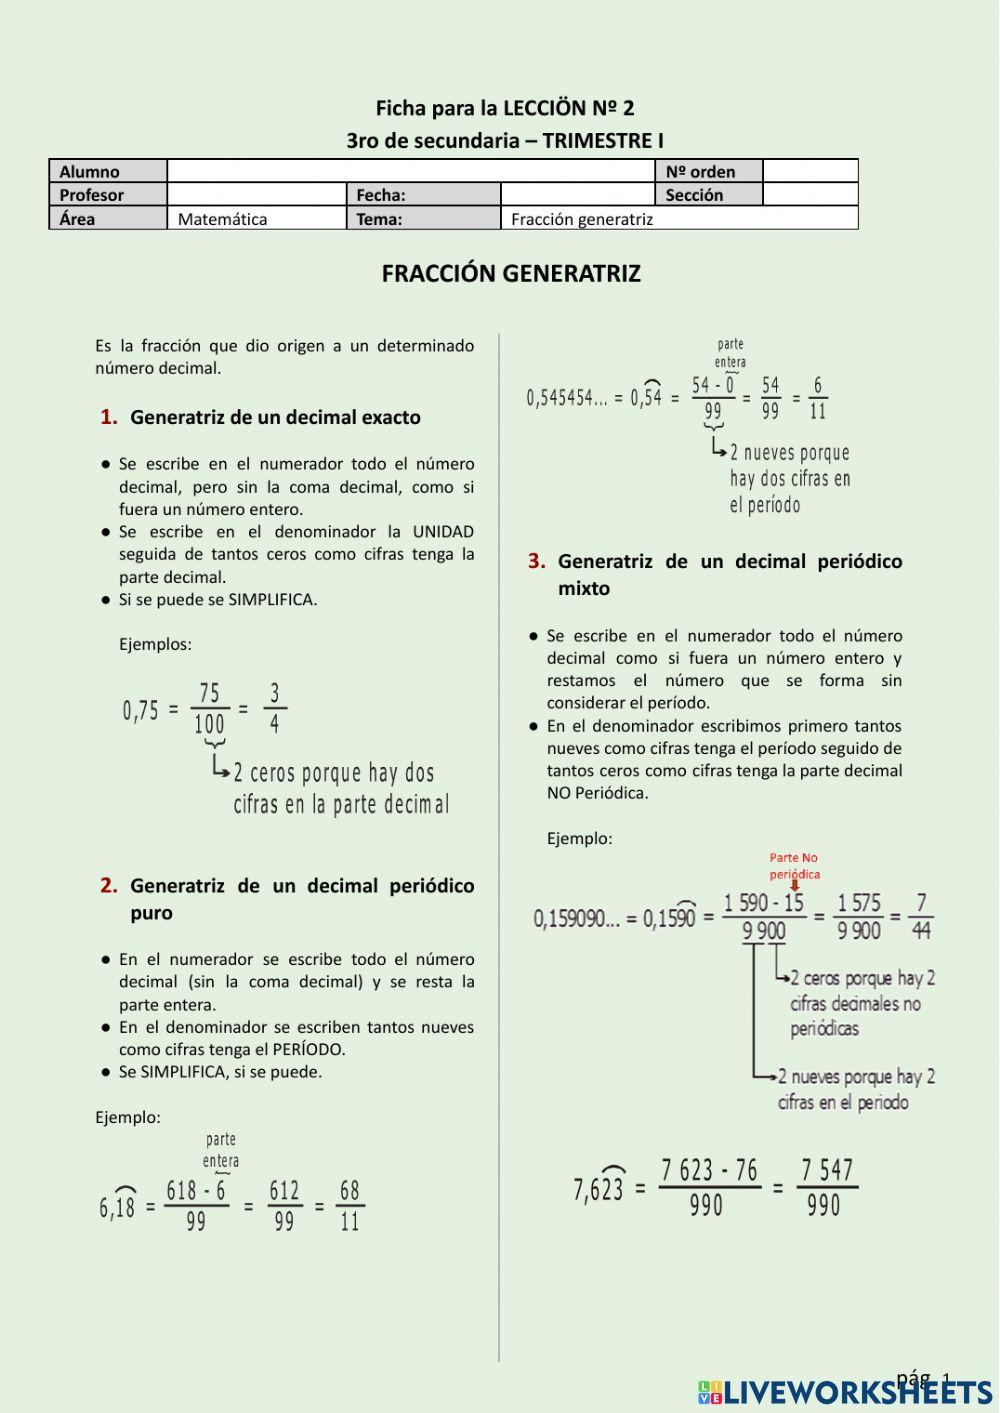 FICHA N°2 - Fracción generatriz